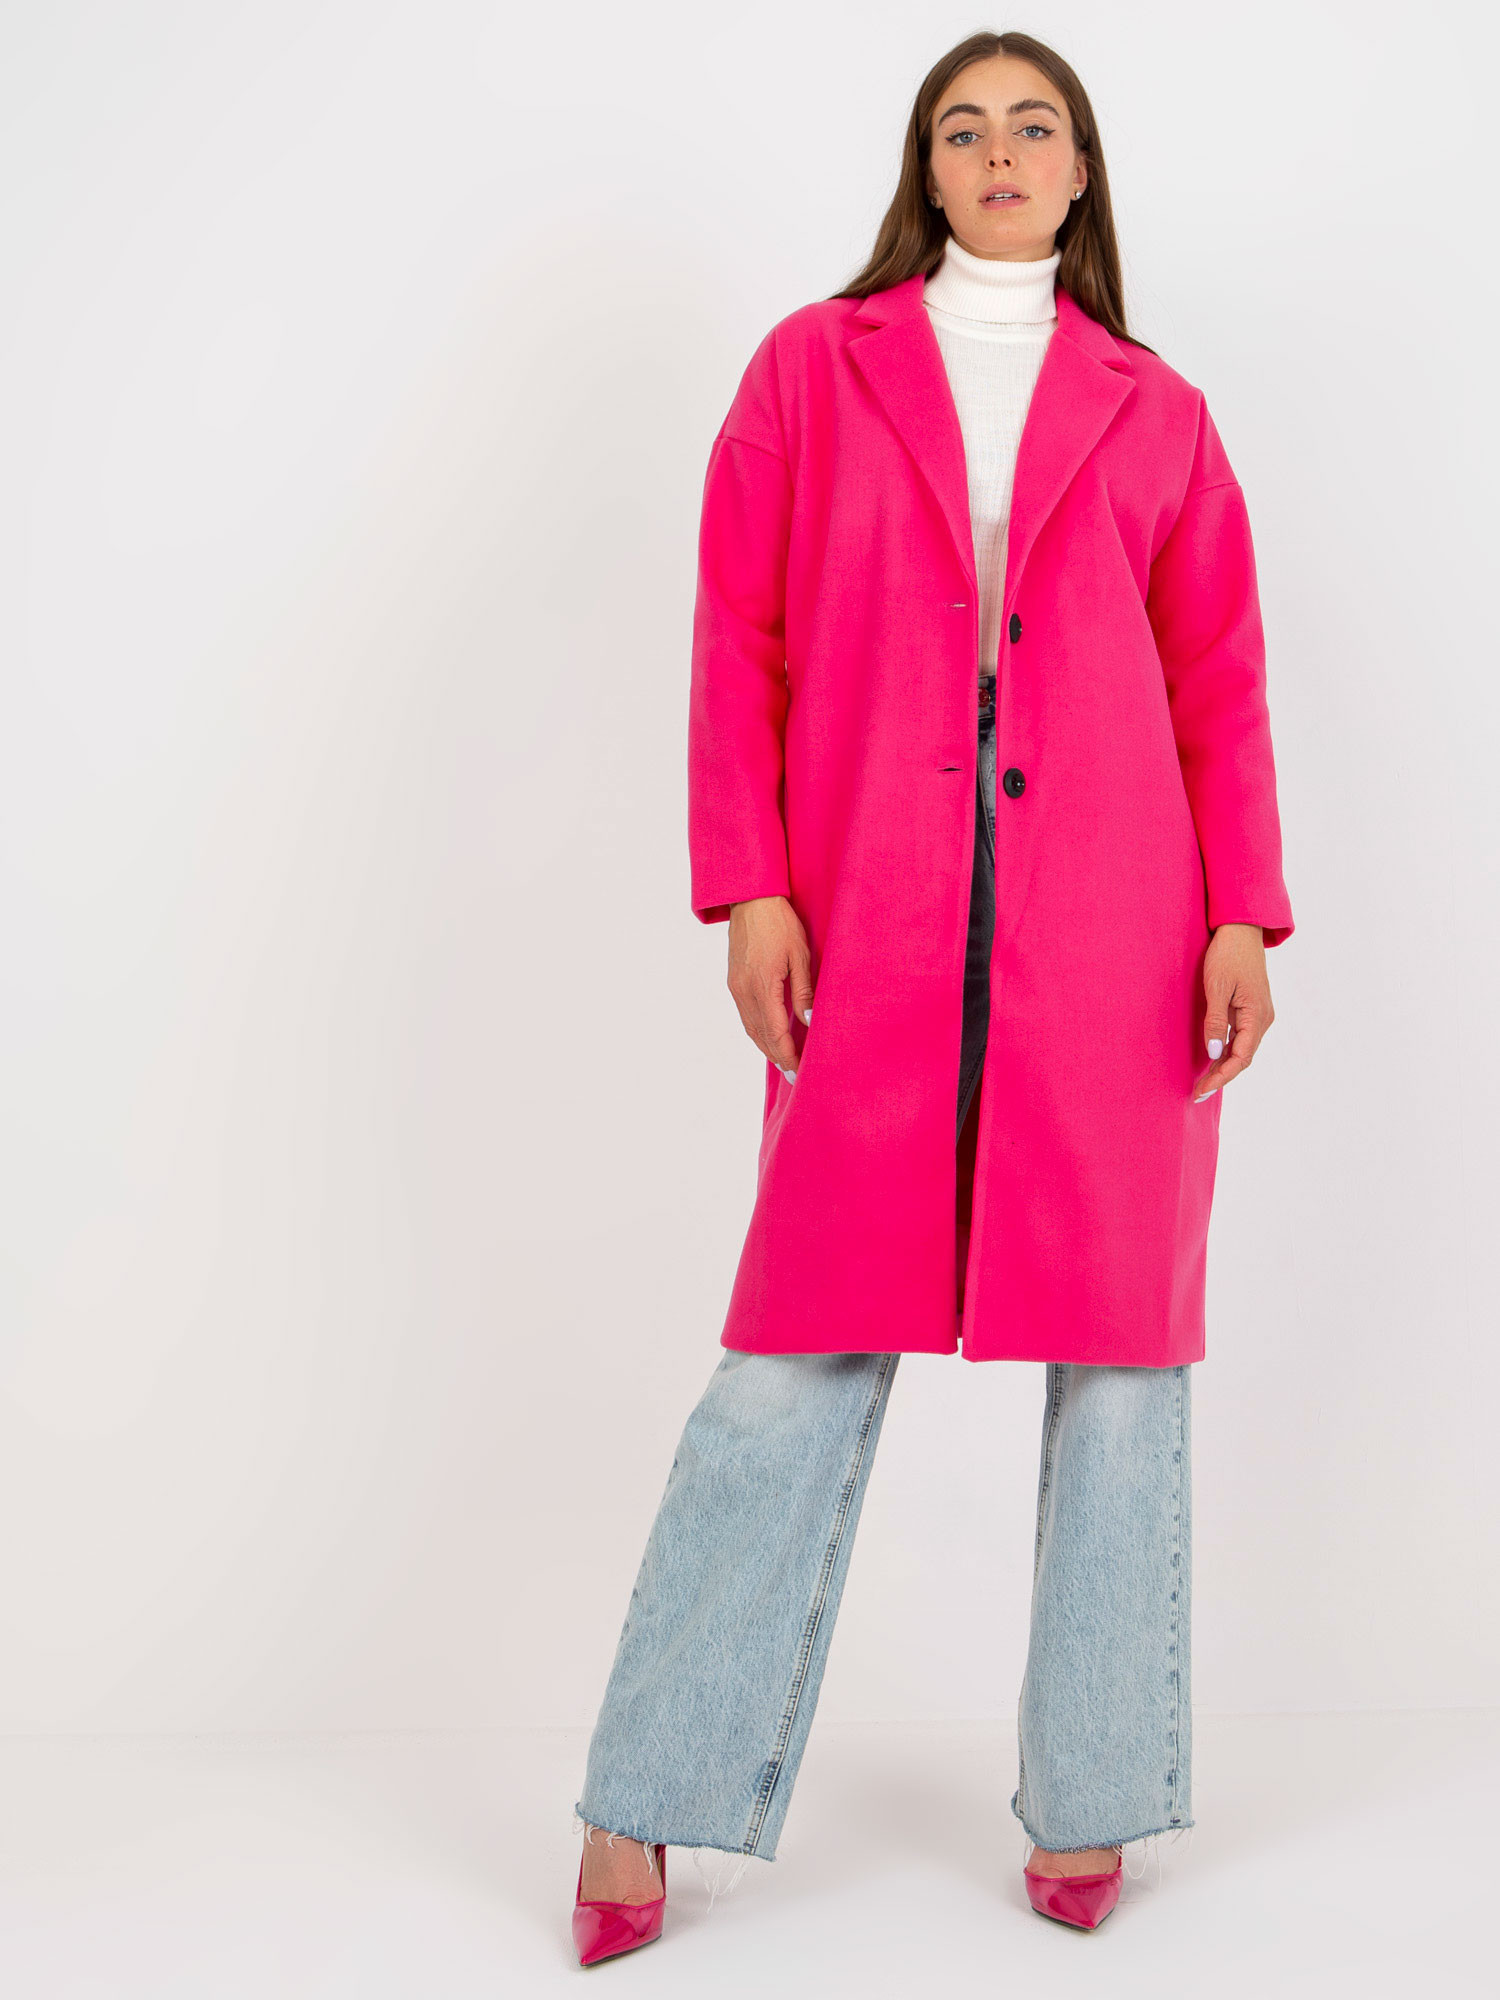 Dámský kabát TW EN BI-7298-1.15 tmavě růžový - Och Bella tmavě růžová one size